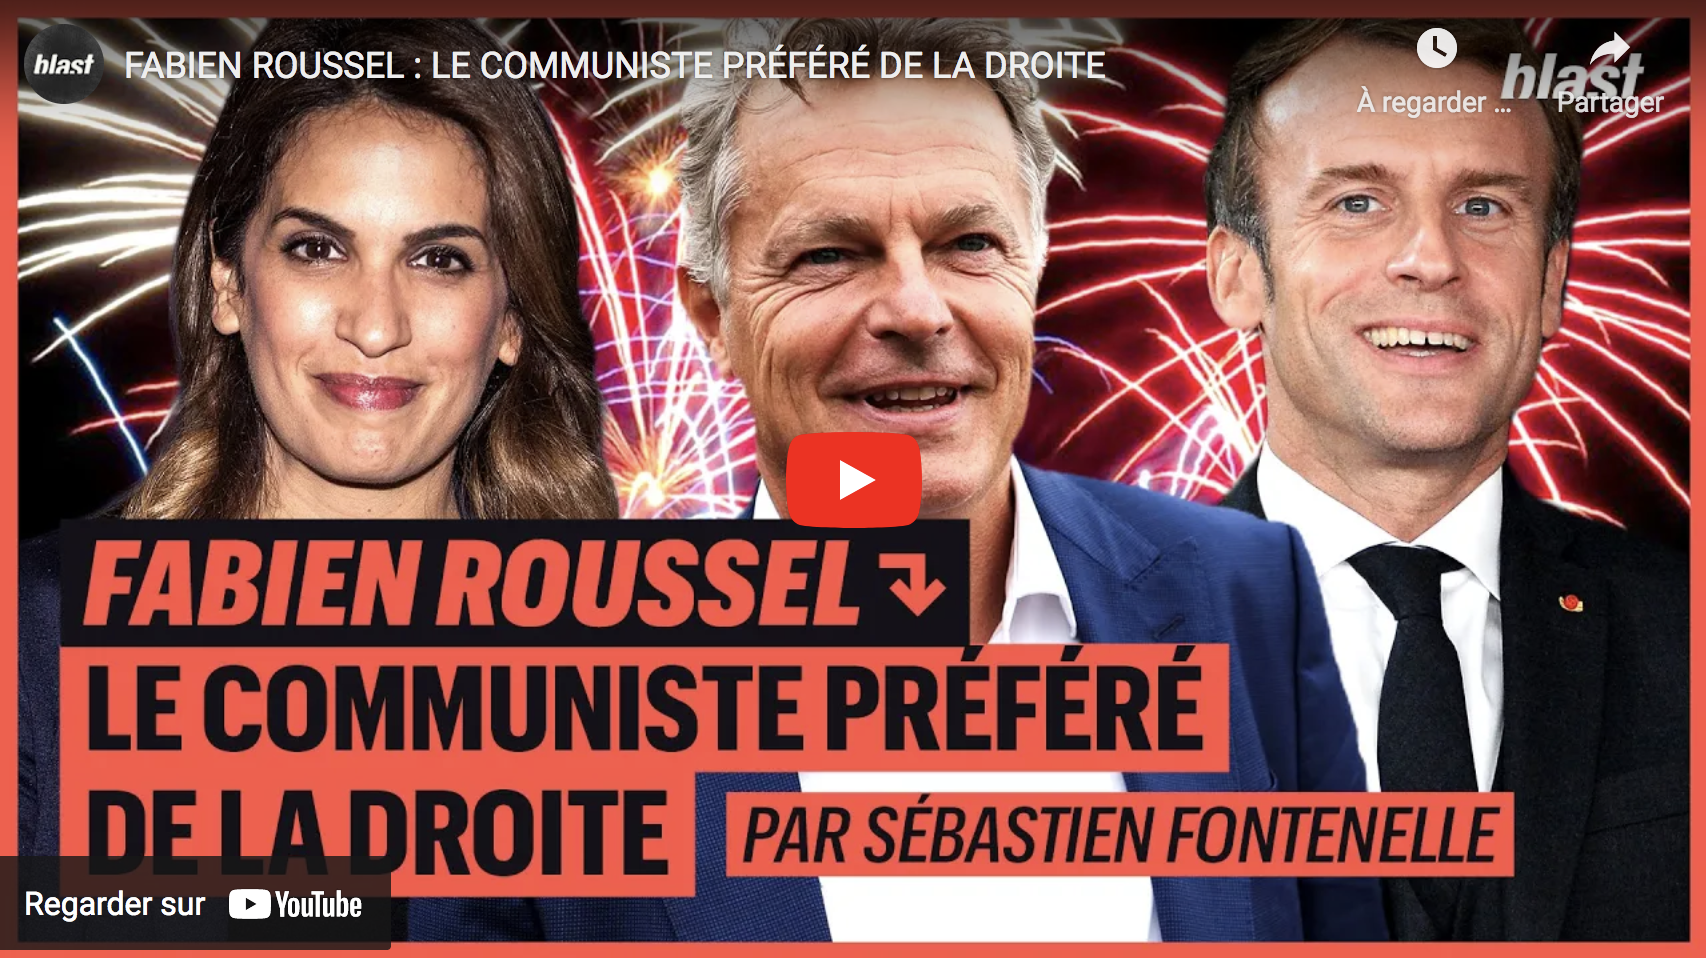 Fabien Roussel : Le communiste préféré de la droite (VIDÉO)